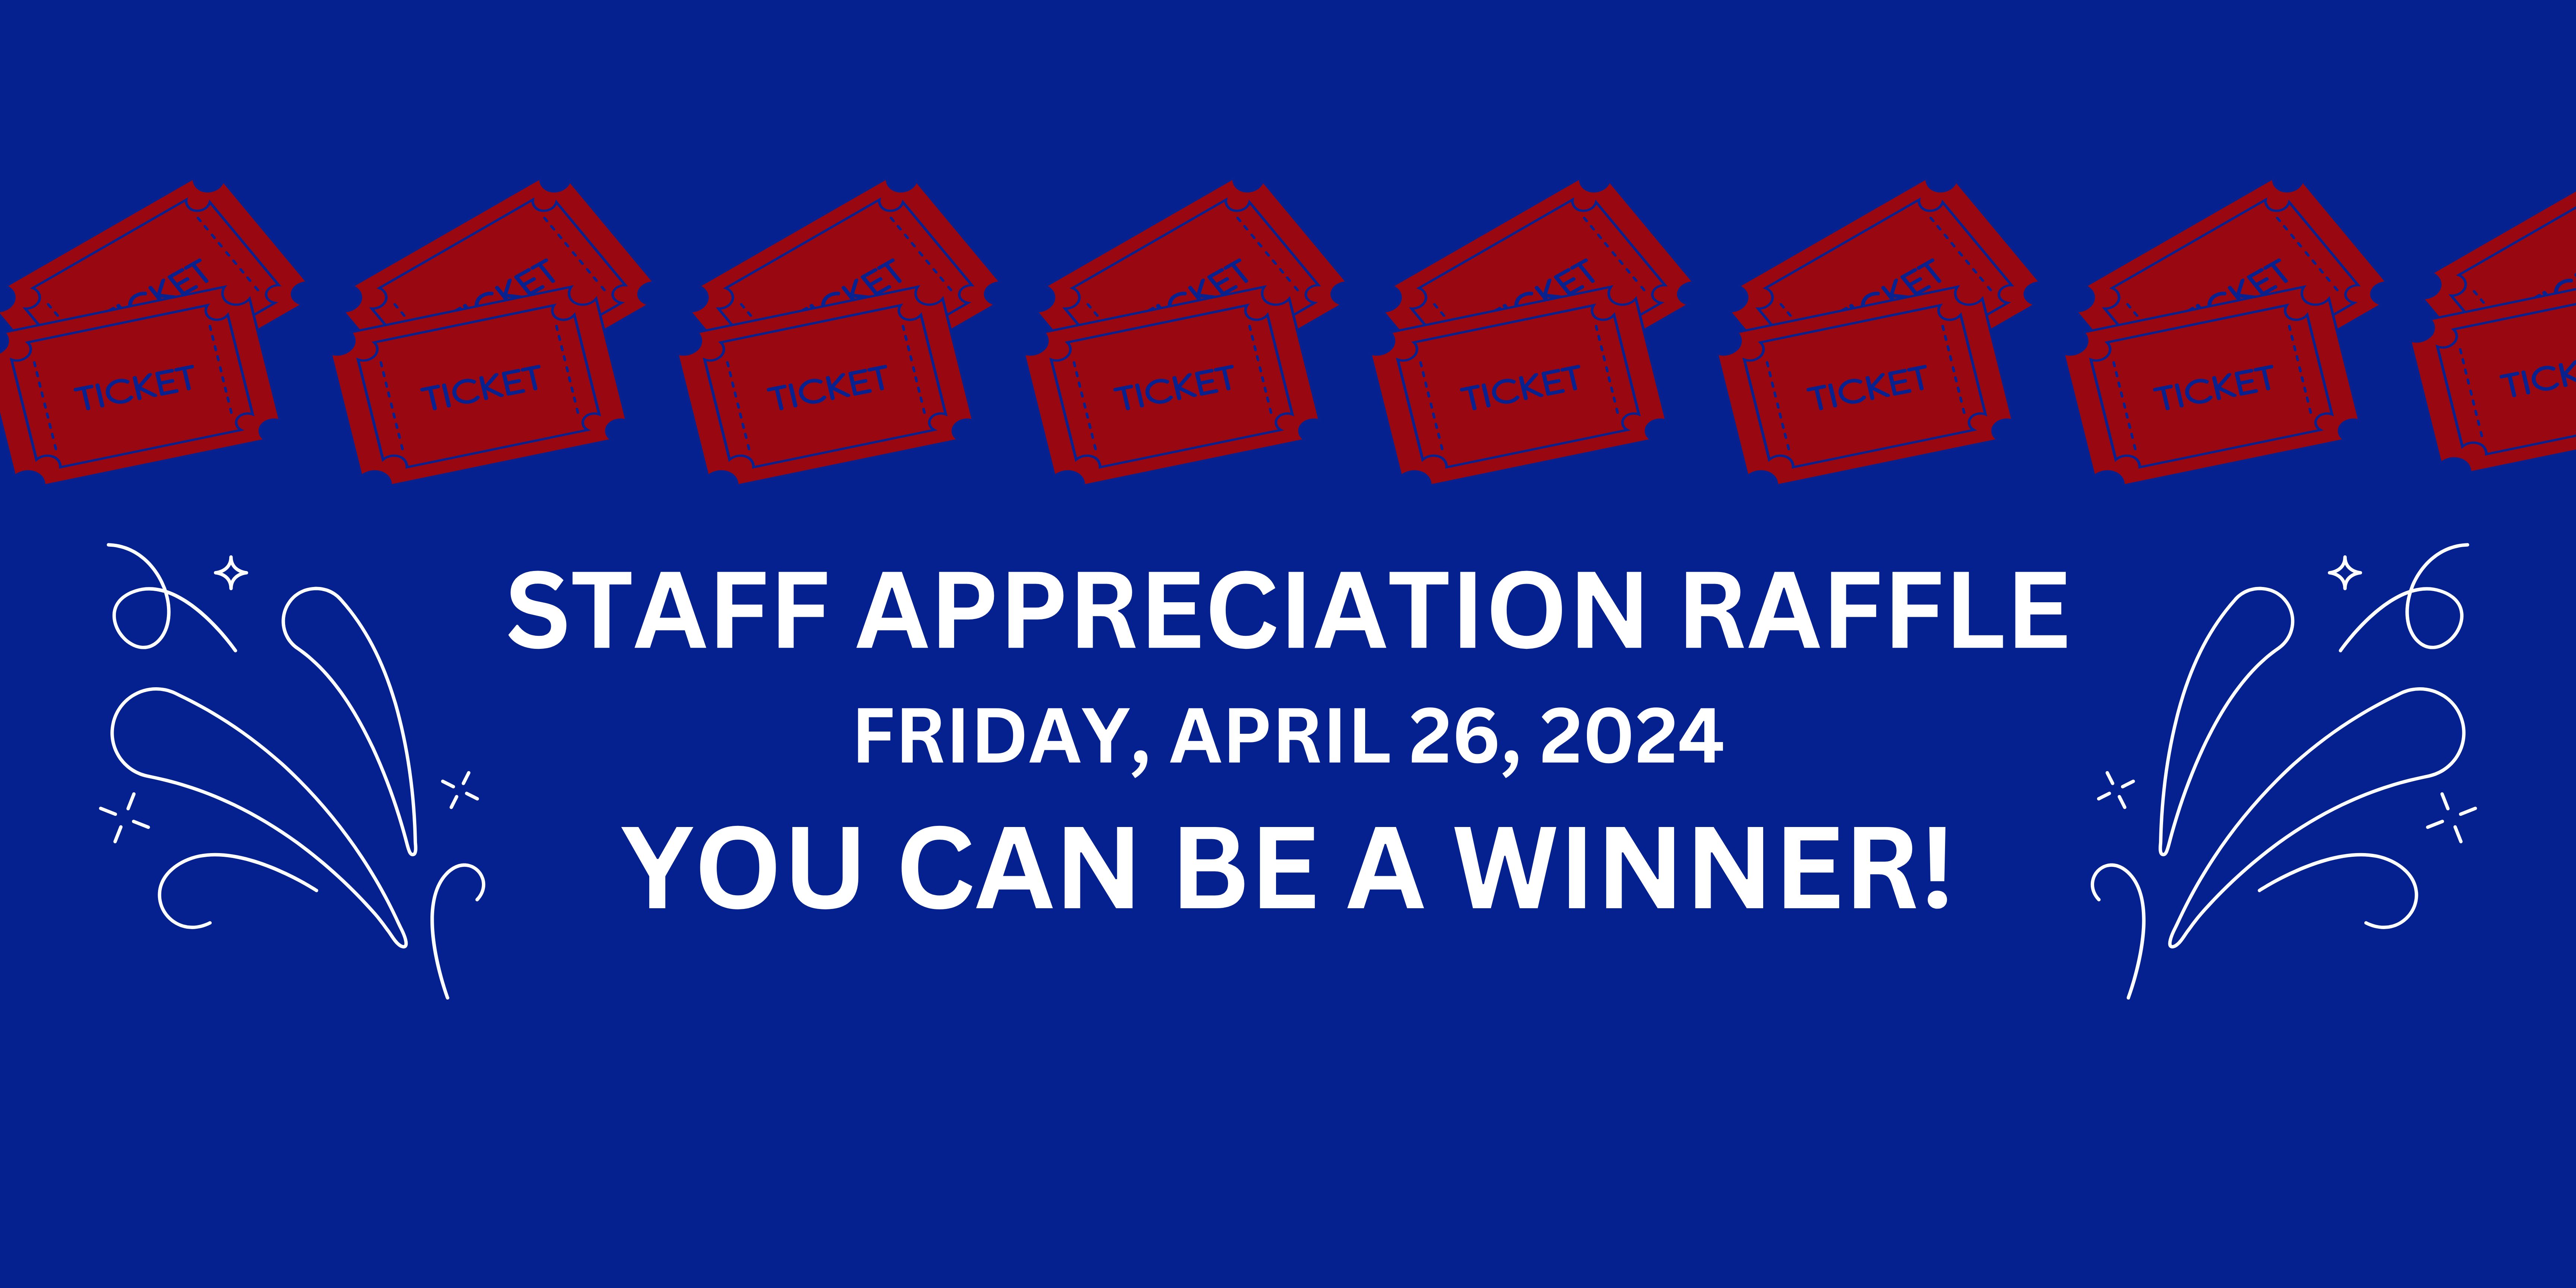 Staff Appreciation Raffle - Ticket Pre-Sale